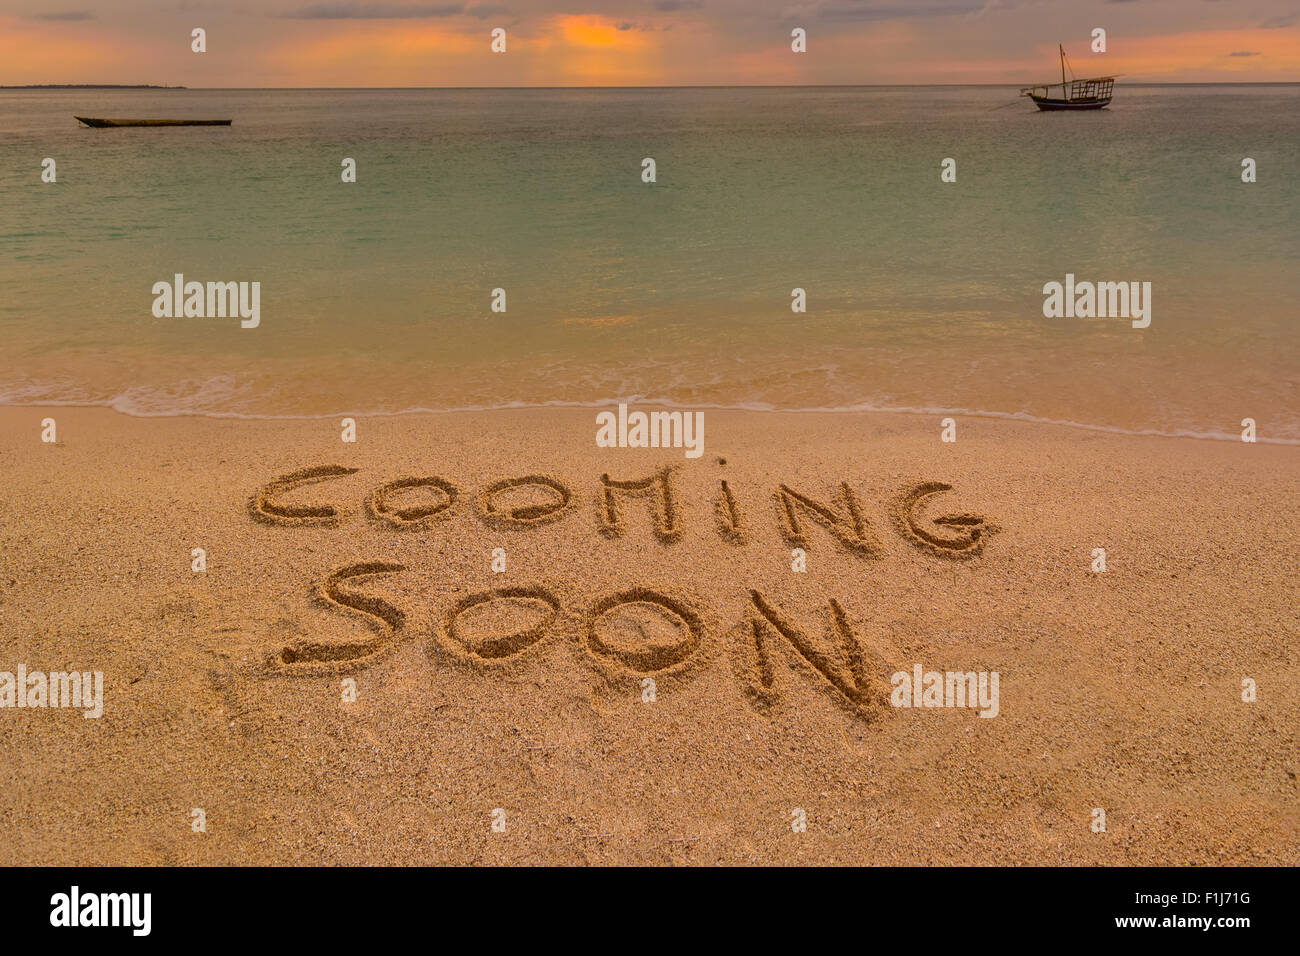 Auf dem Bild einen Strand bei Sonnenuntergang mit den Worten auf dem Sand "Cooming bald". Stockfoto